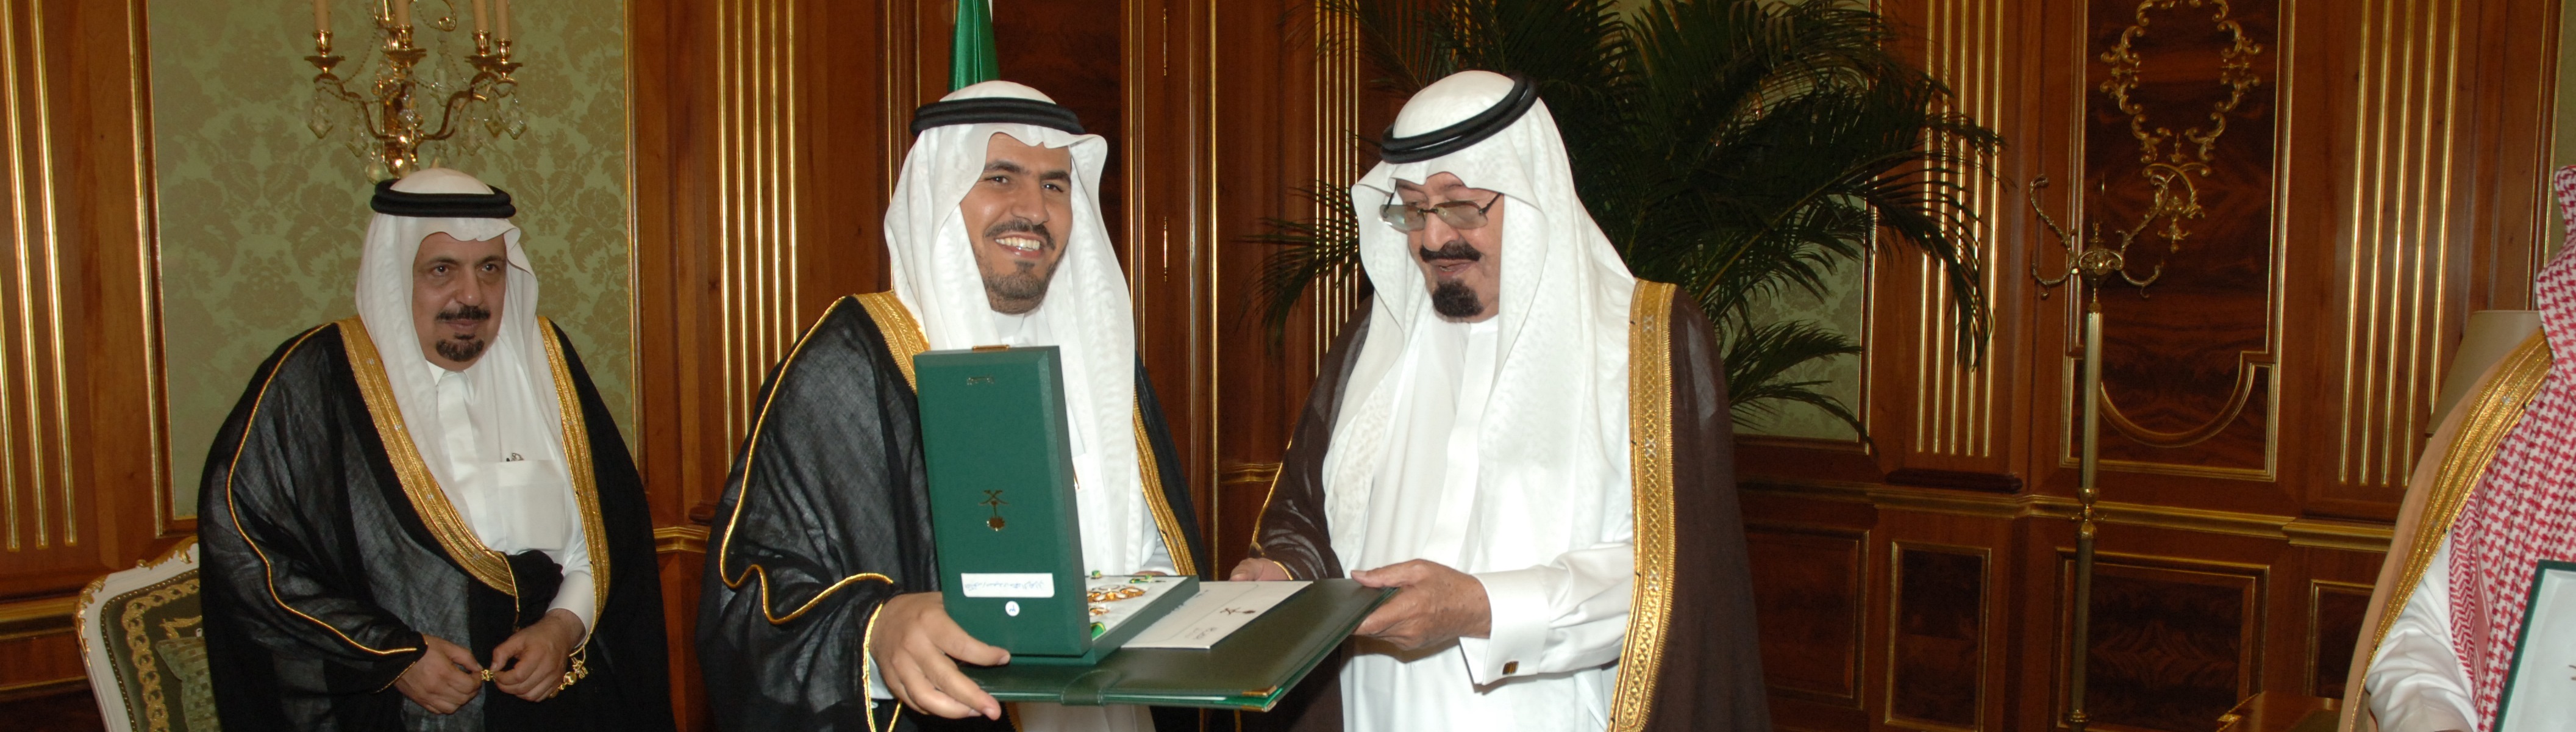 Recieving award from King Abdullah - Award 1